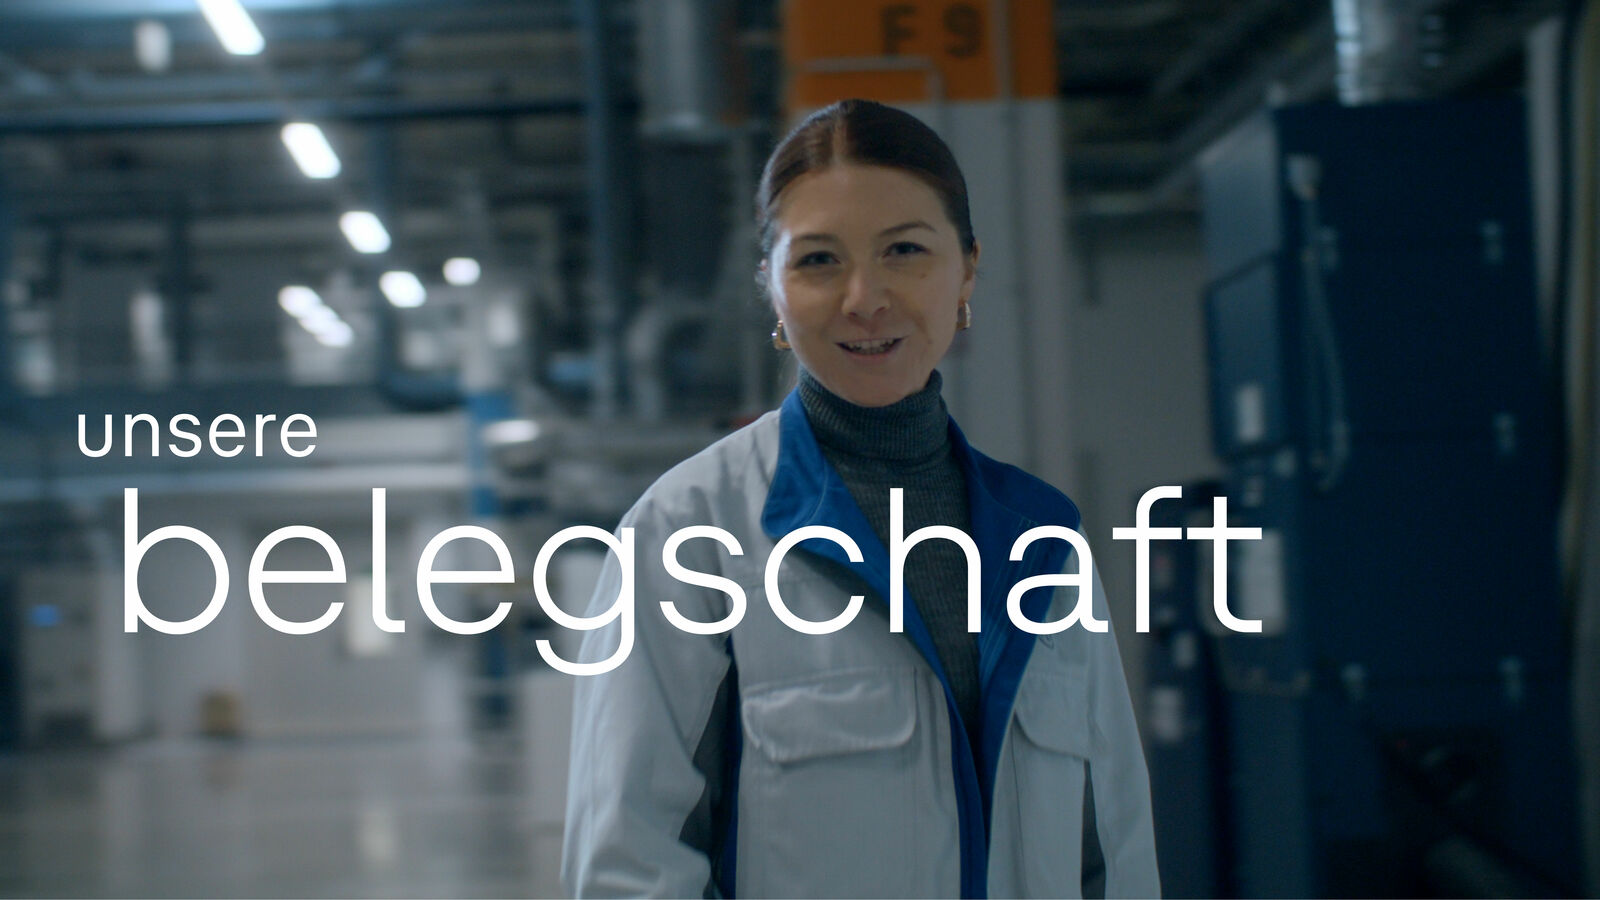 Lächelnde Frau mit zurückgebundenen Haaren, die eine Arbeitskittel und einen blauen Rollkragen trägt, steht in einer industriellen Umgebung. Über ihr erscheint der Text 'unsere Belegschaft'